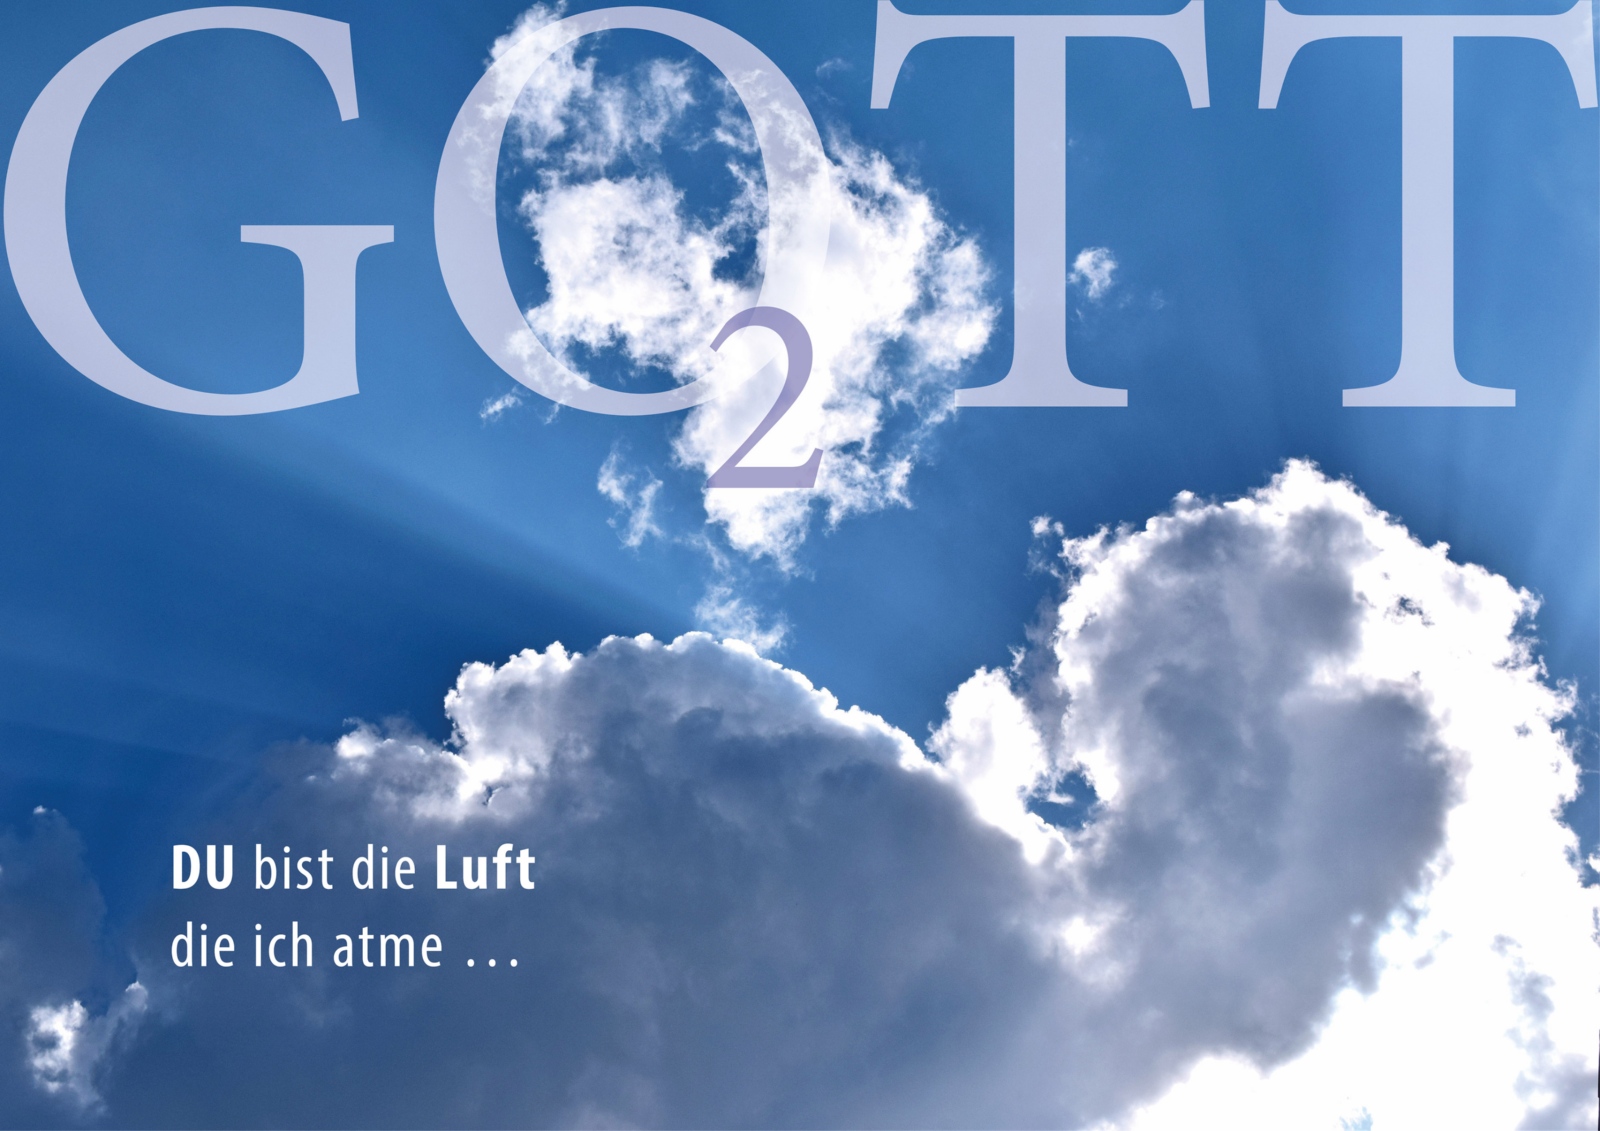 gott_o2_luft_die_ich_atme_cc0-gemeinfrei_pfarrbriefservice